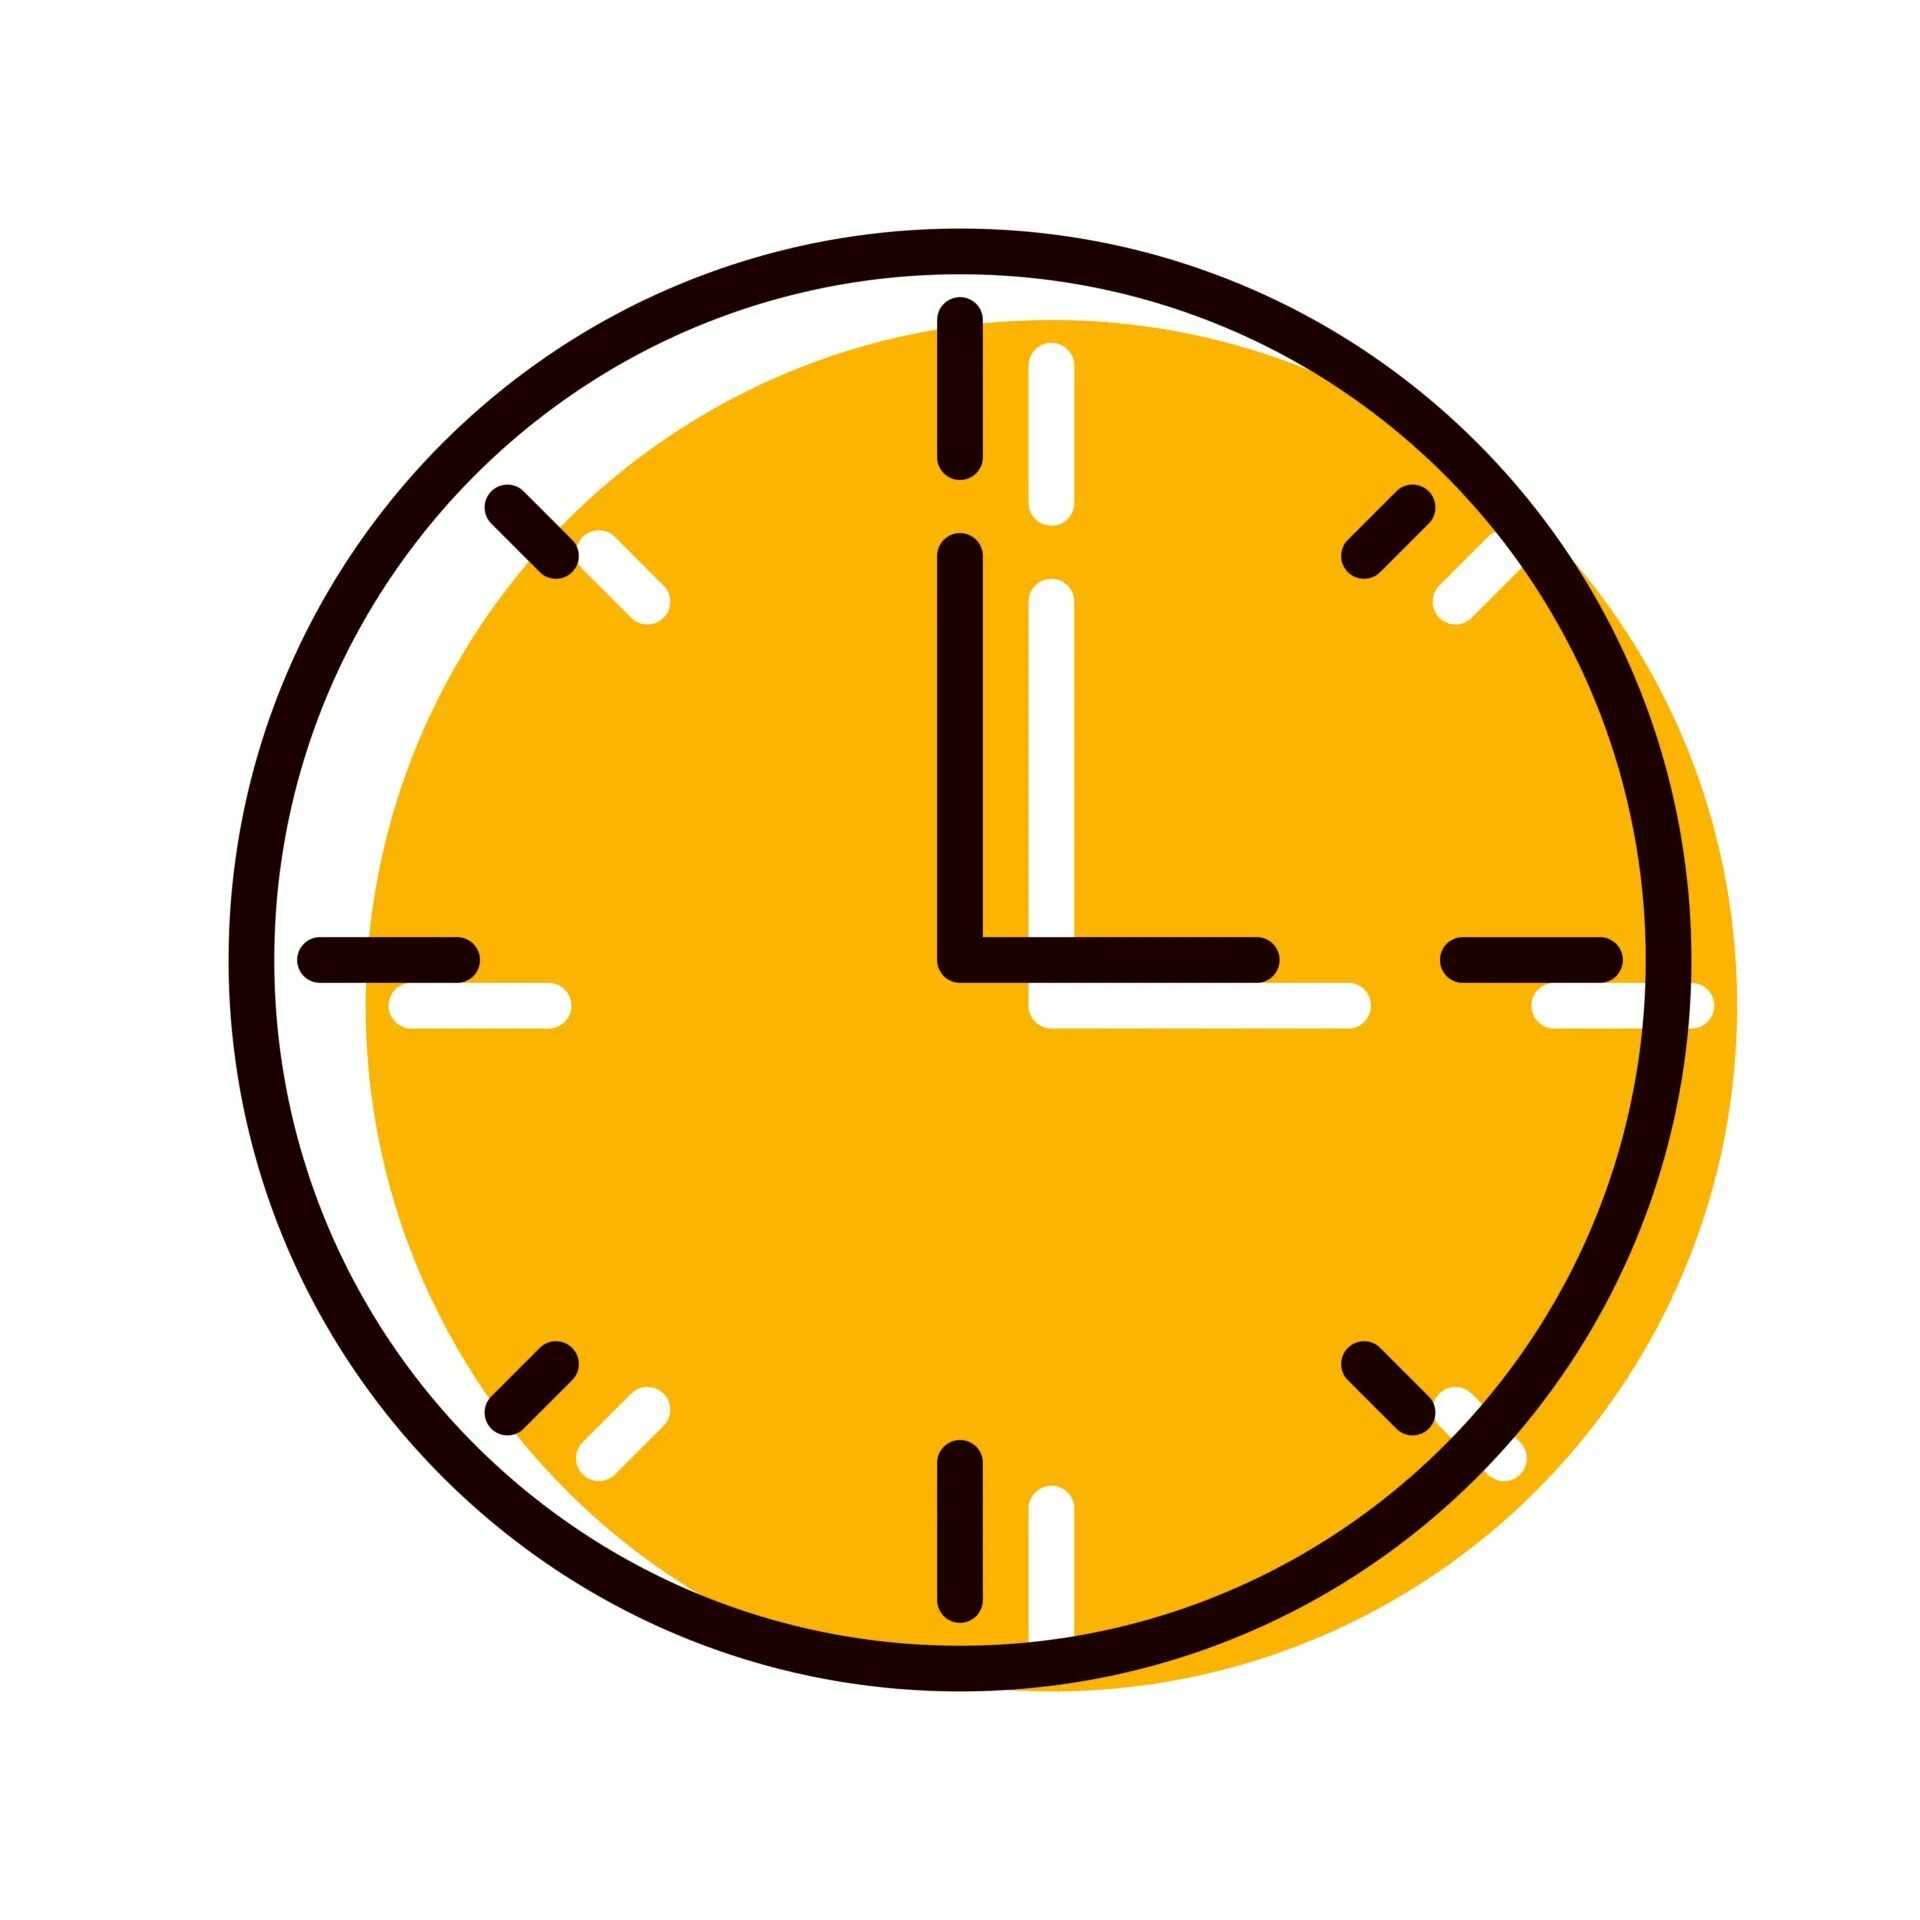 15 минут 3. Значок часы. Часы пиктограмма. Часы логотип. Значок время.